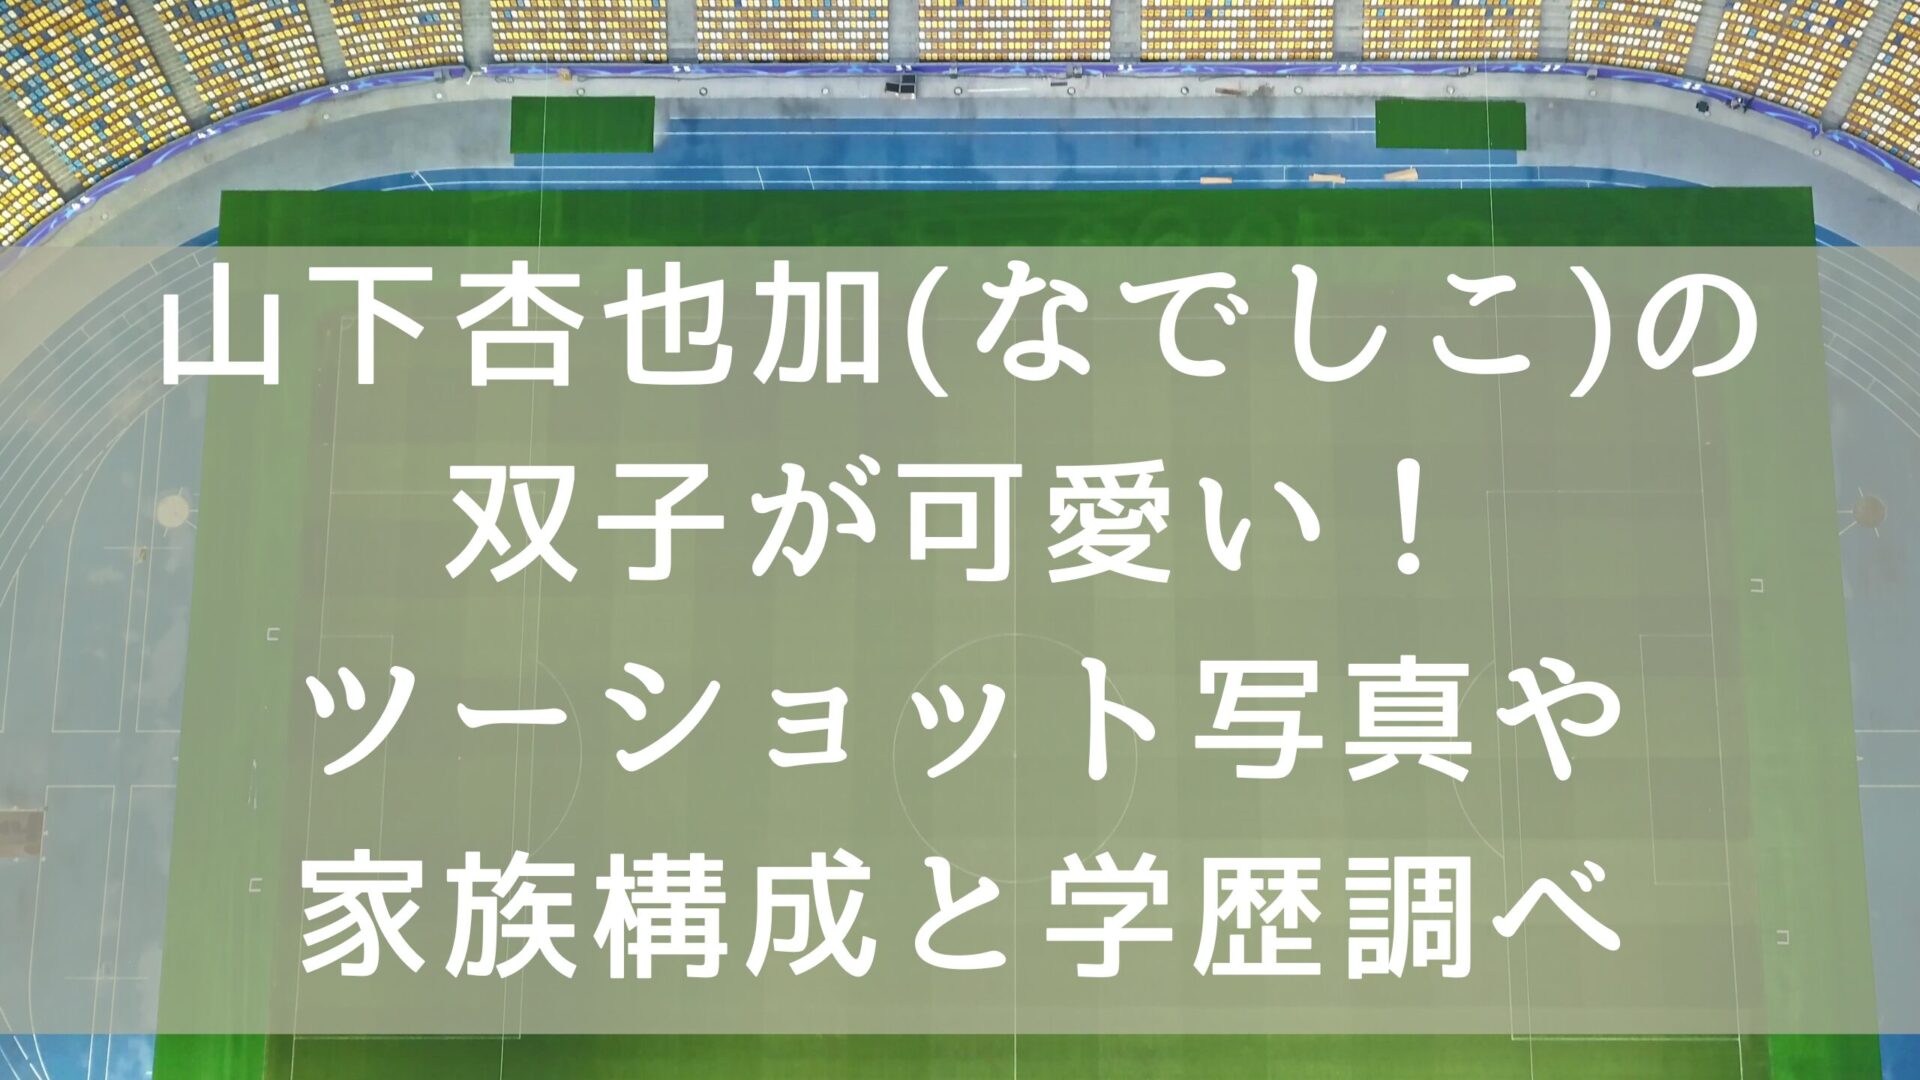 山下杏也加選手のタイトルとサッカーのピッチ背景